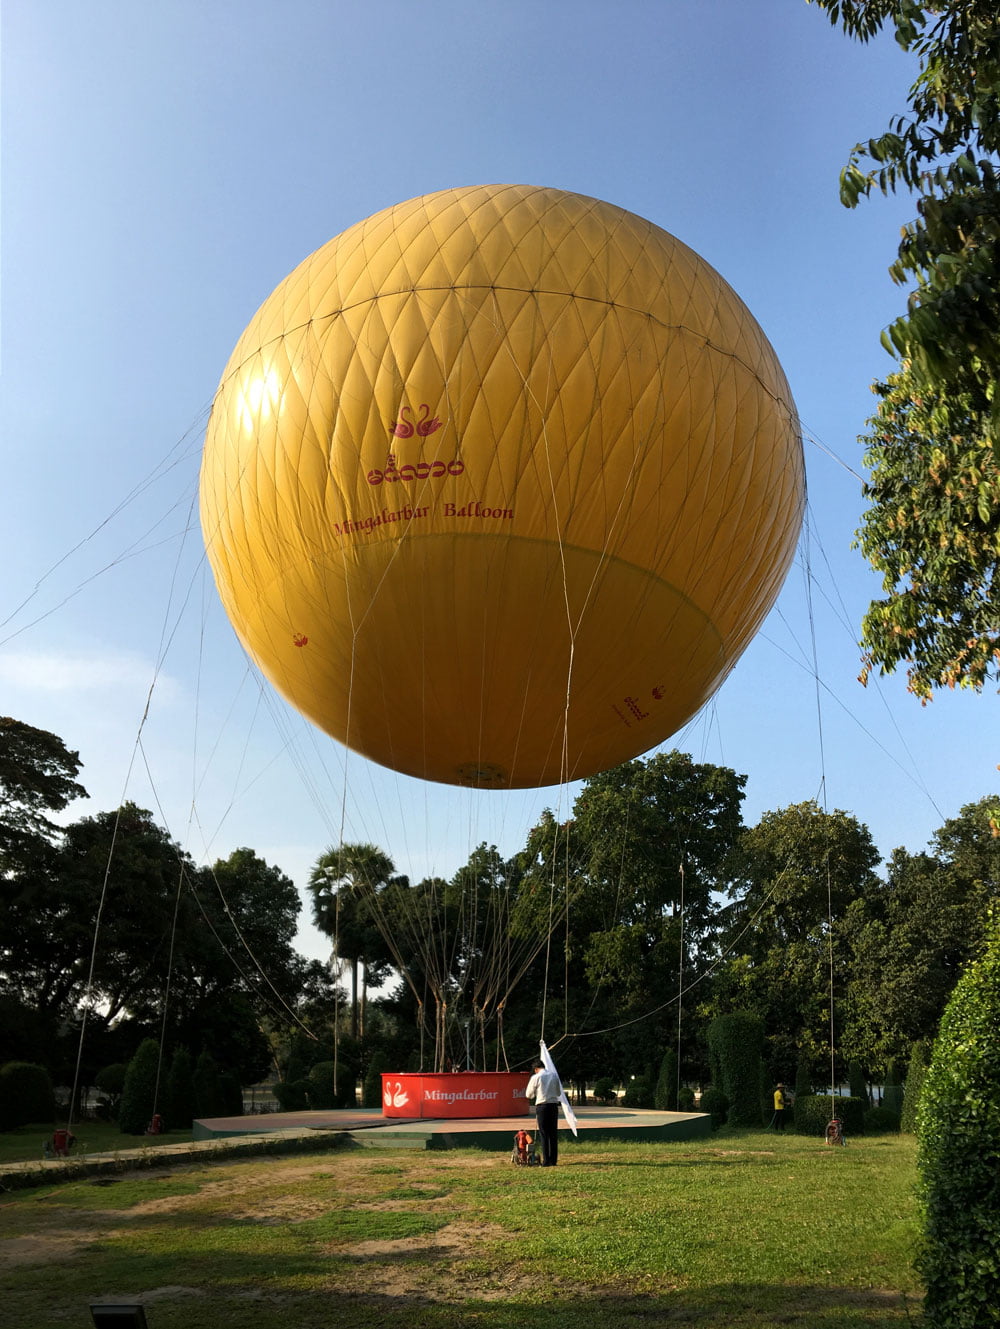 Yangon Mingalabar Balloon